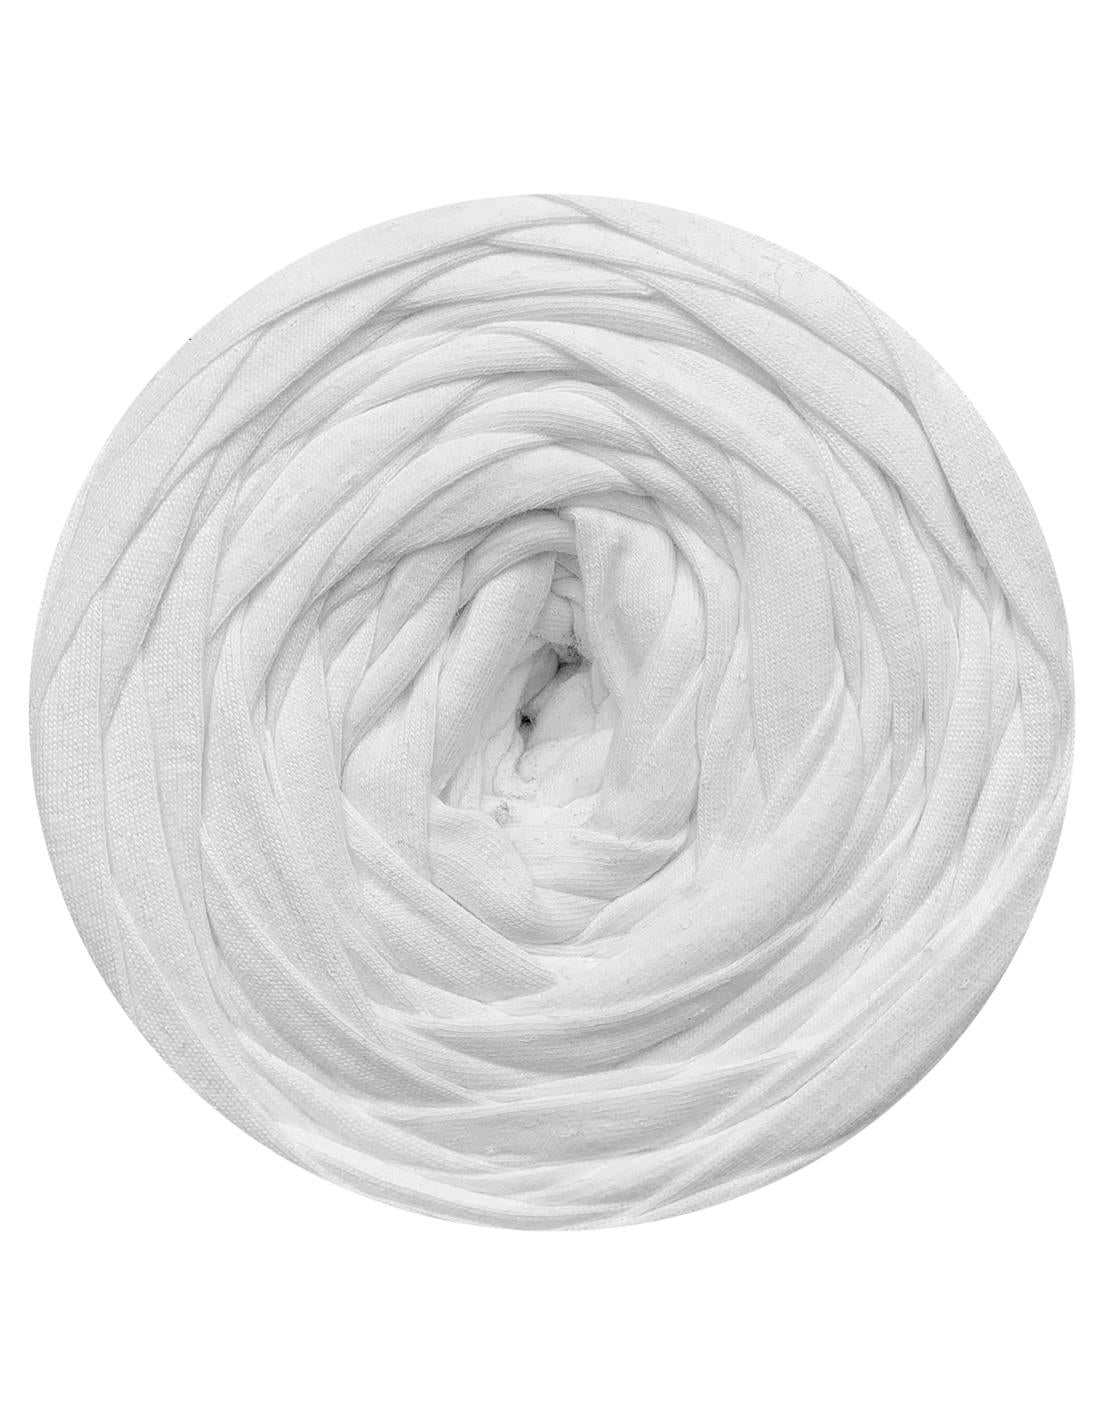 White t-shirt yarn by Rescue Yarn (100-120m)